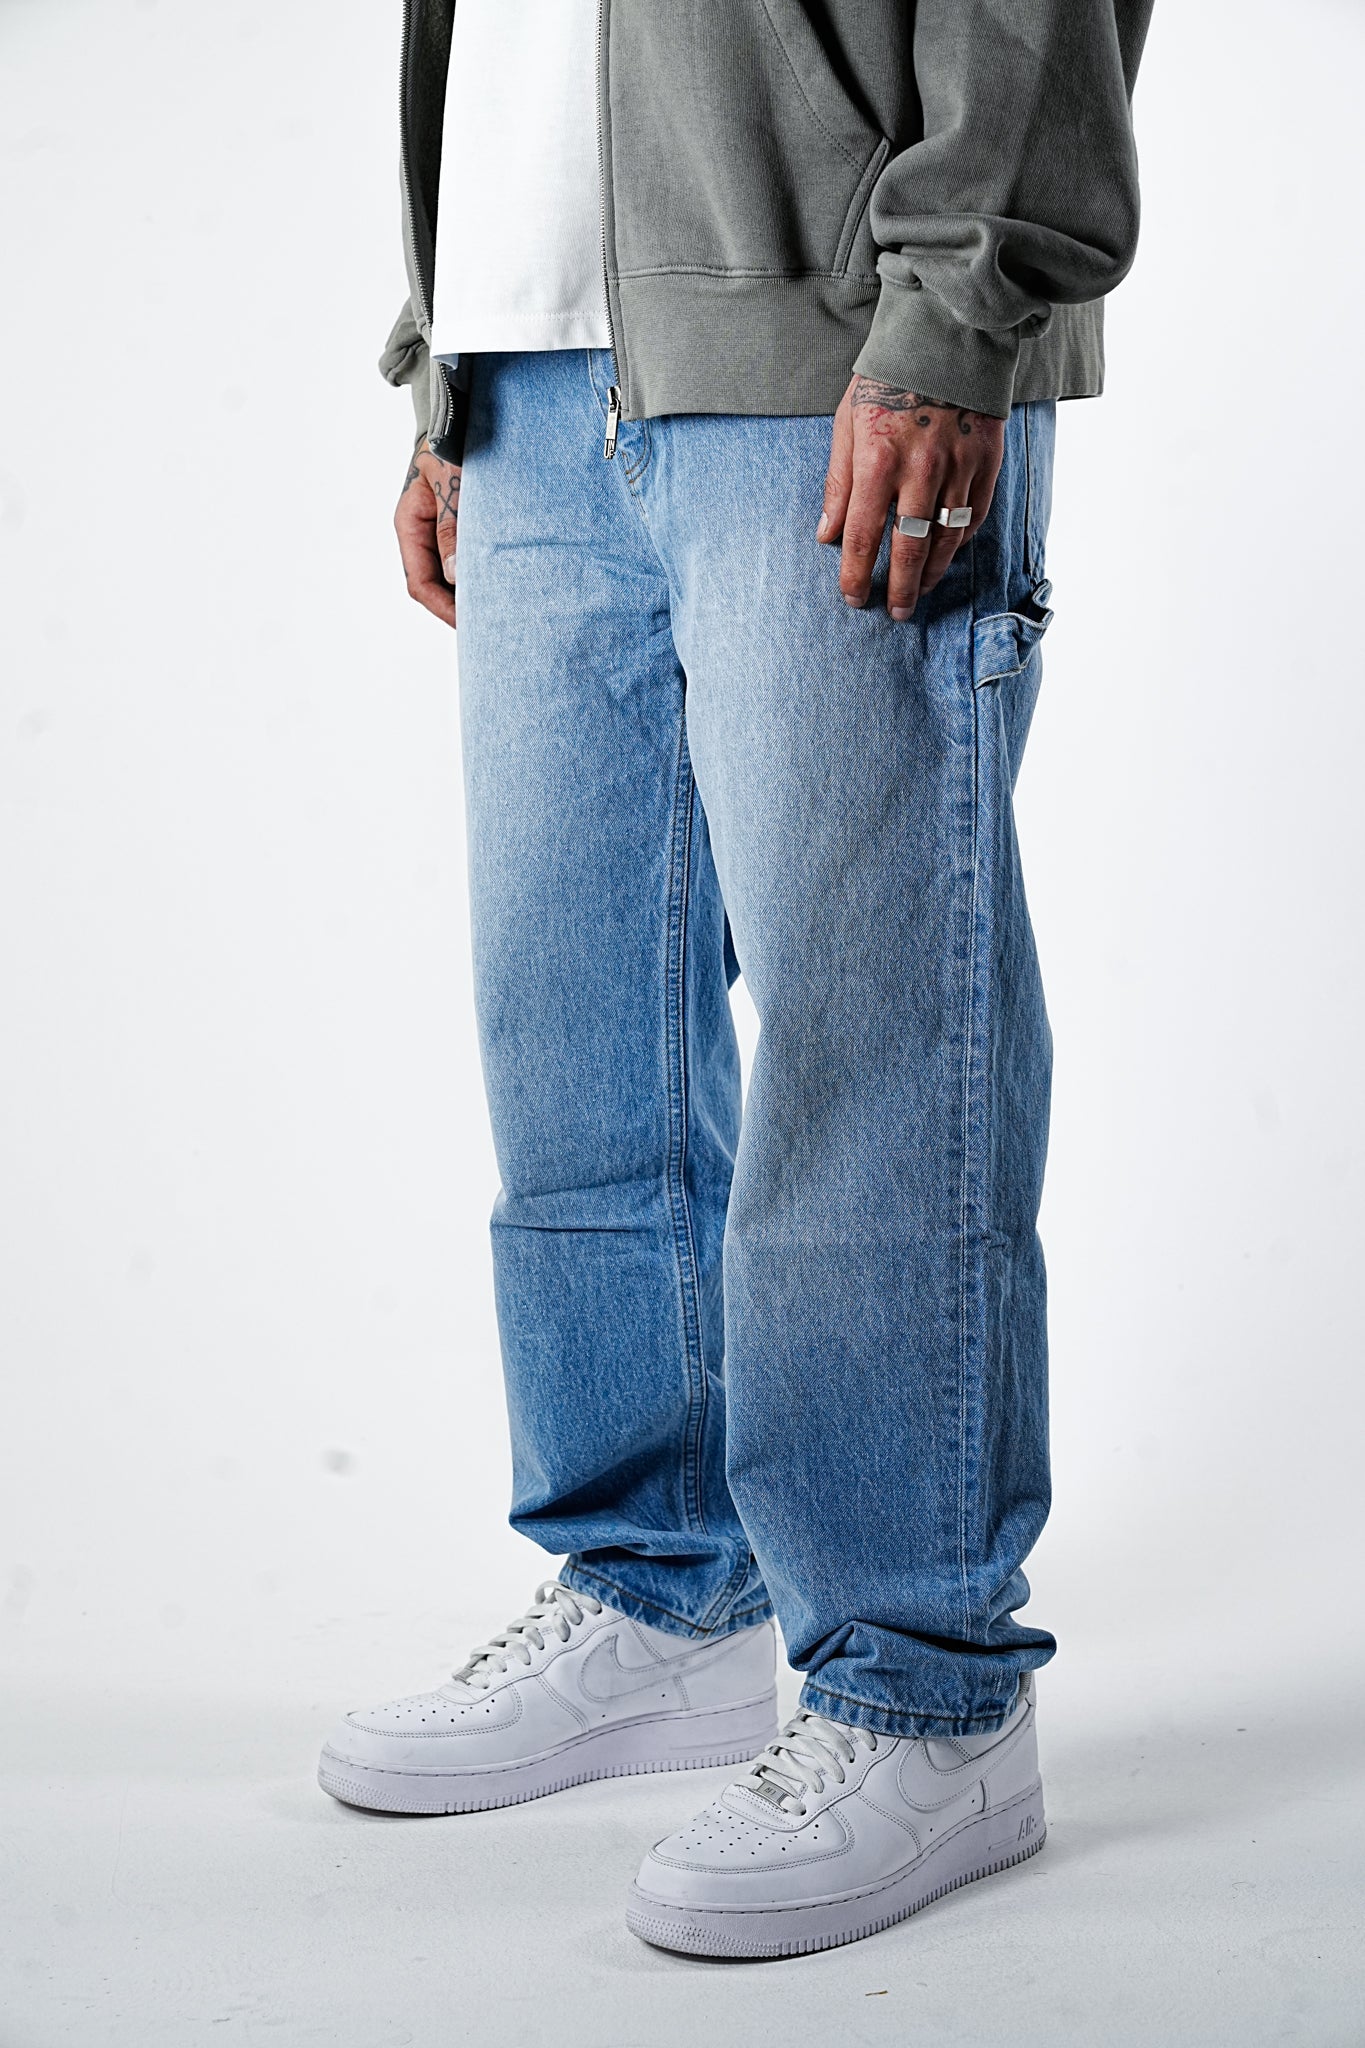 Premium Signature Wide Light Blue Jeans - UNEFFECTED STUDIOS® - JEANS - UNEFFECTED STUDIOS®